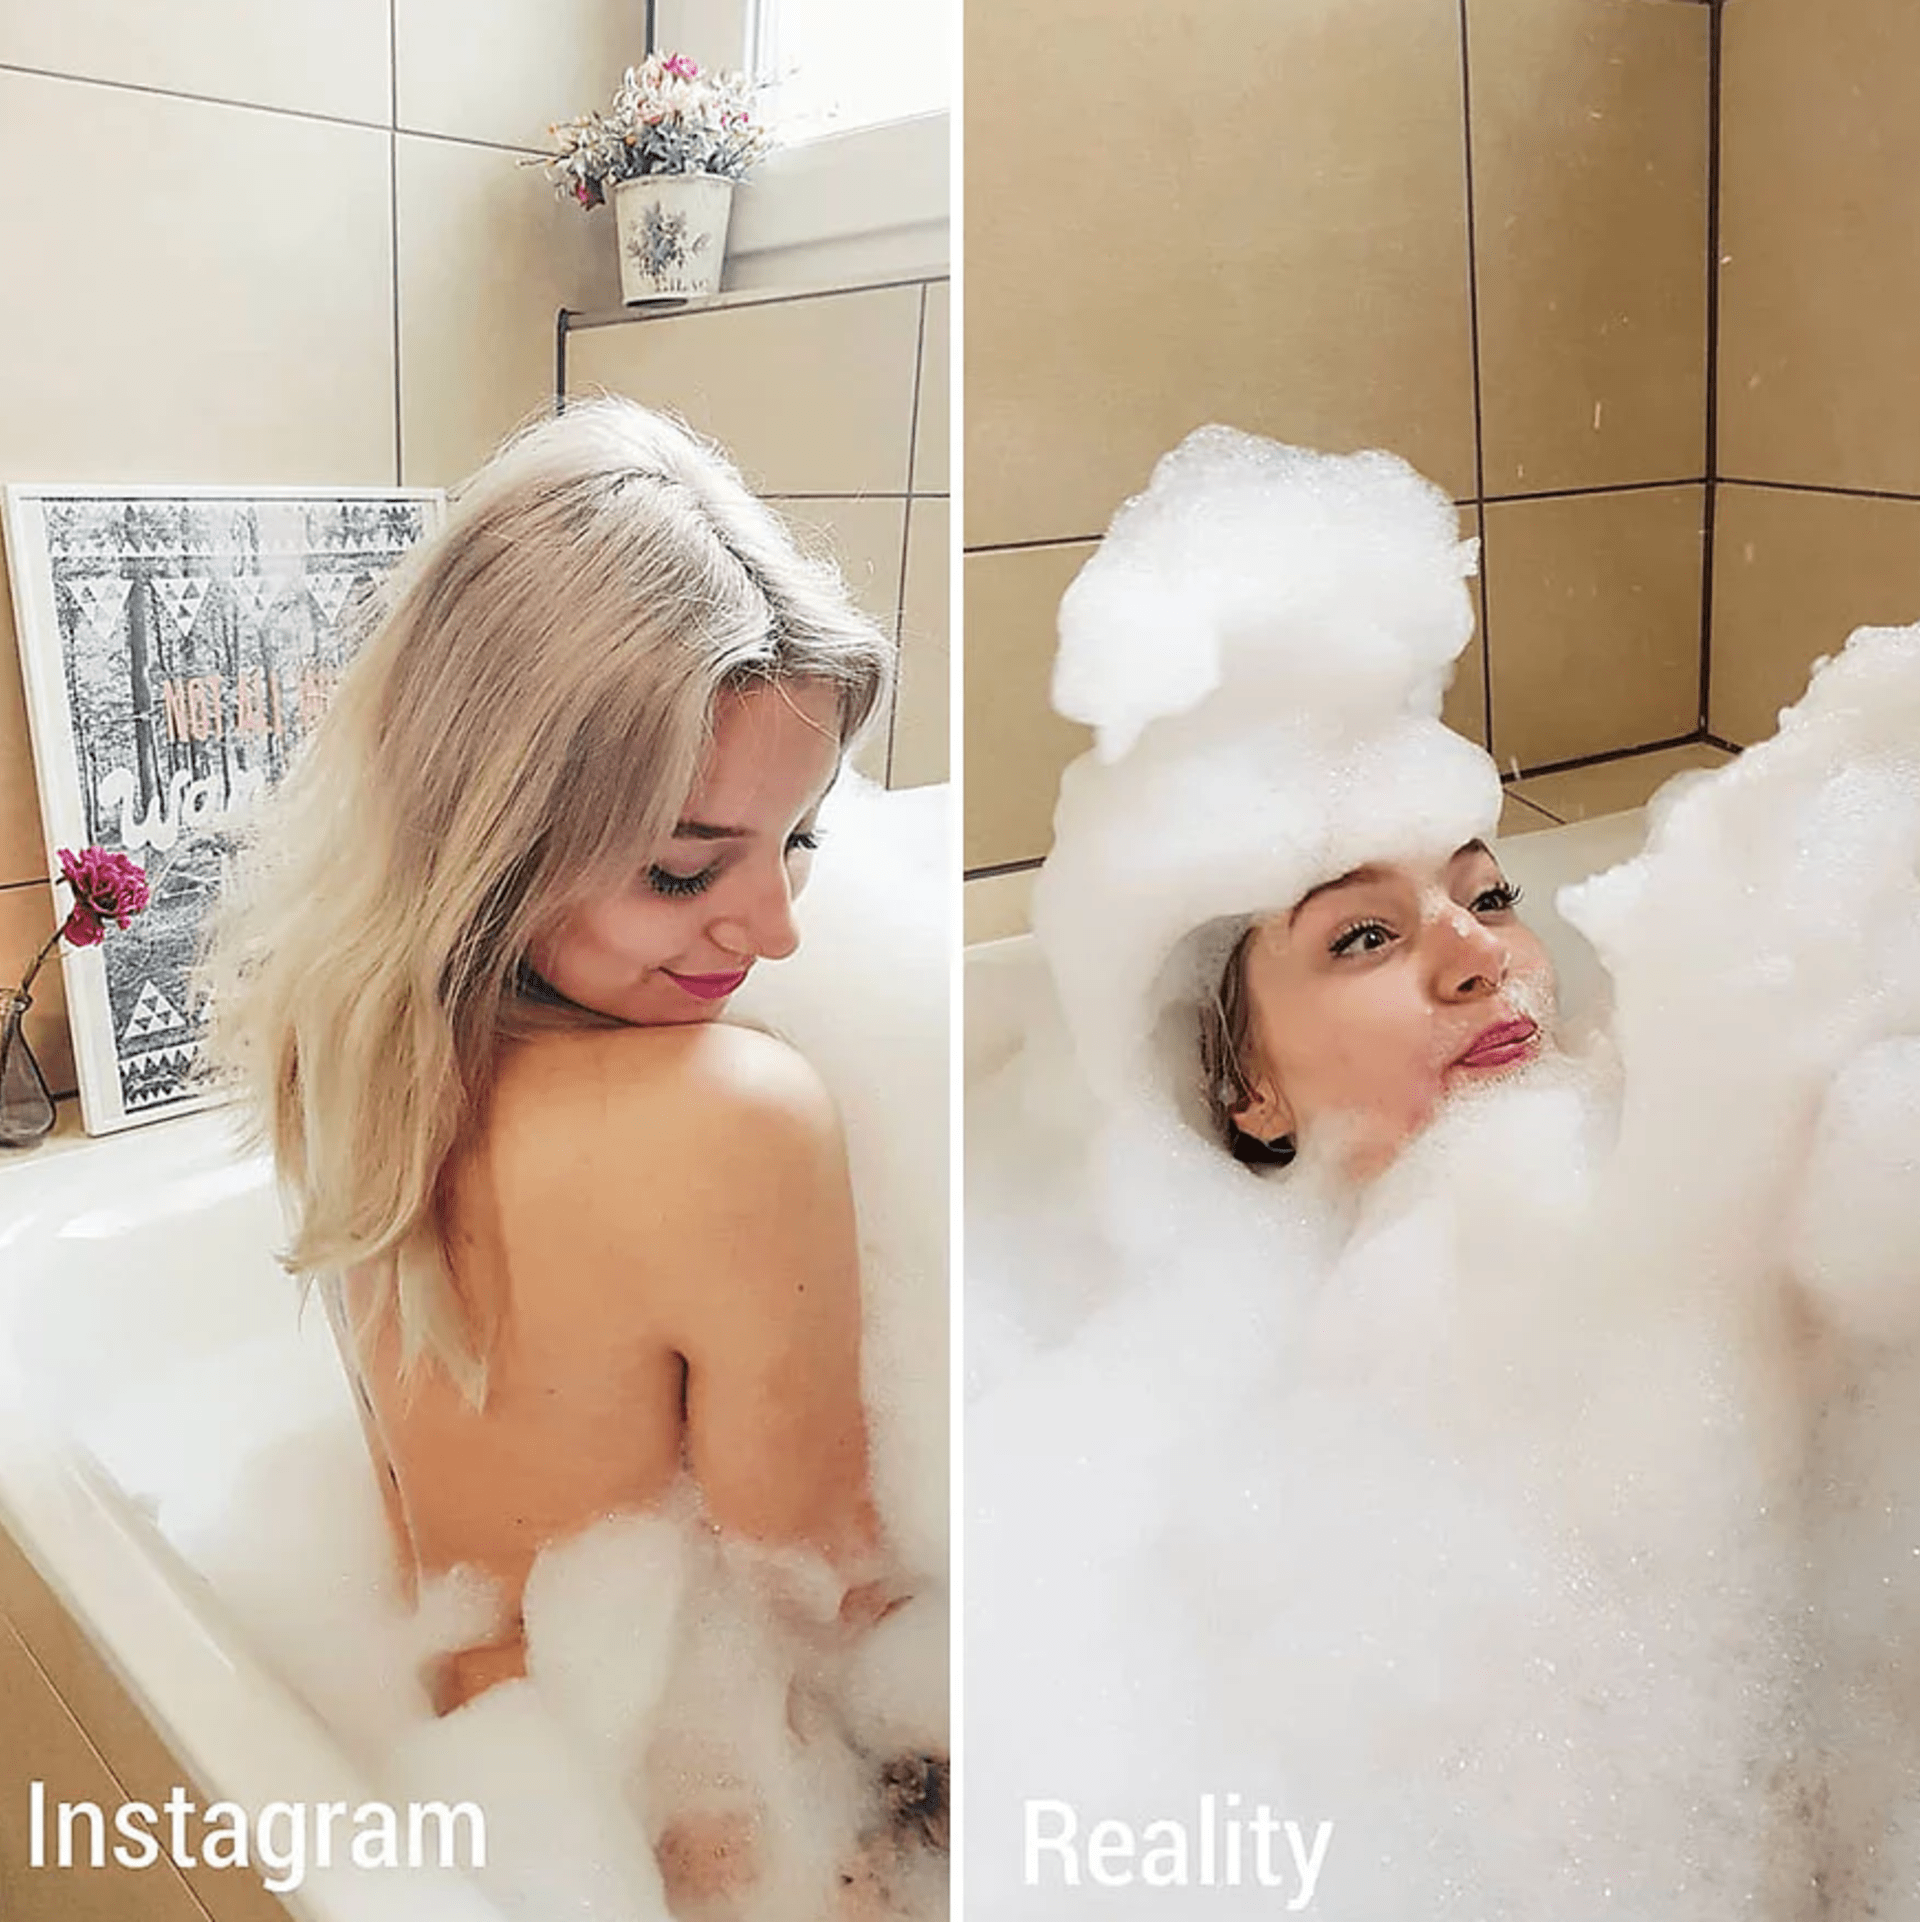 Žena ukazuje rozdíl mezi fotkami na Instagramu a realitou 19